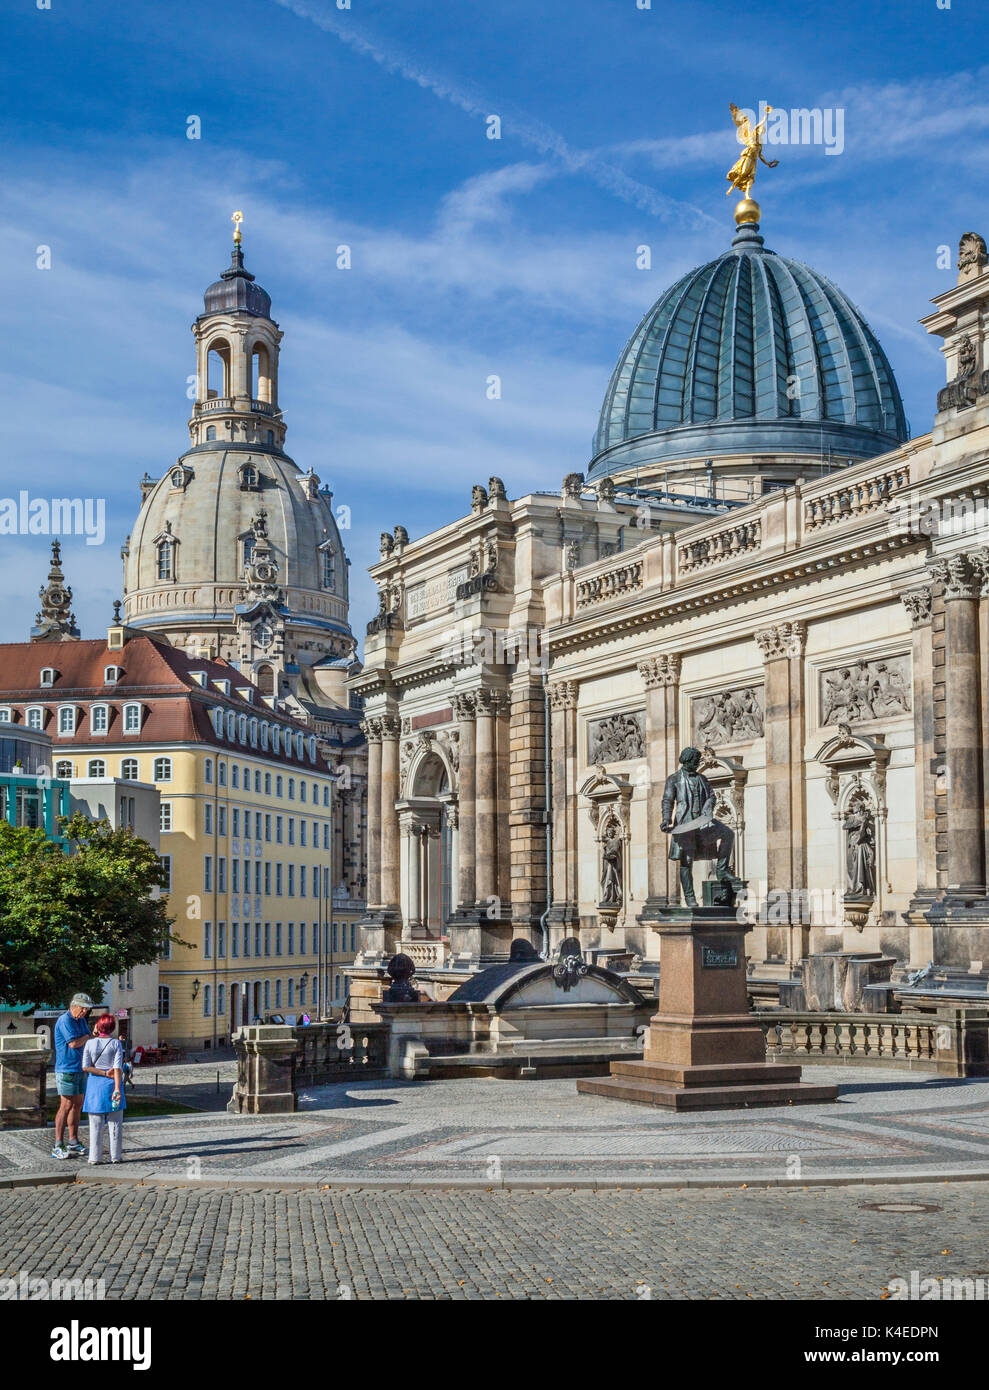 Deutschland, Sachsen, Dresden, Brühlsche Terrasse, Dresden Hochschule für Bildende Künste mit dem unverwechselbaren Glaskuppel, die den Spitznamen "Zitronenpresse" mit einem goldenen Stockfoto